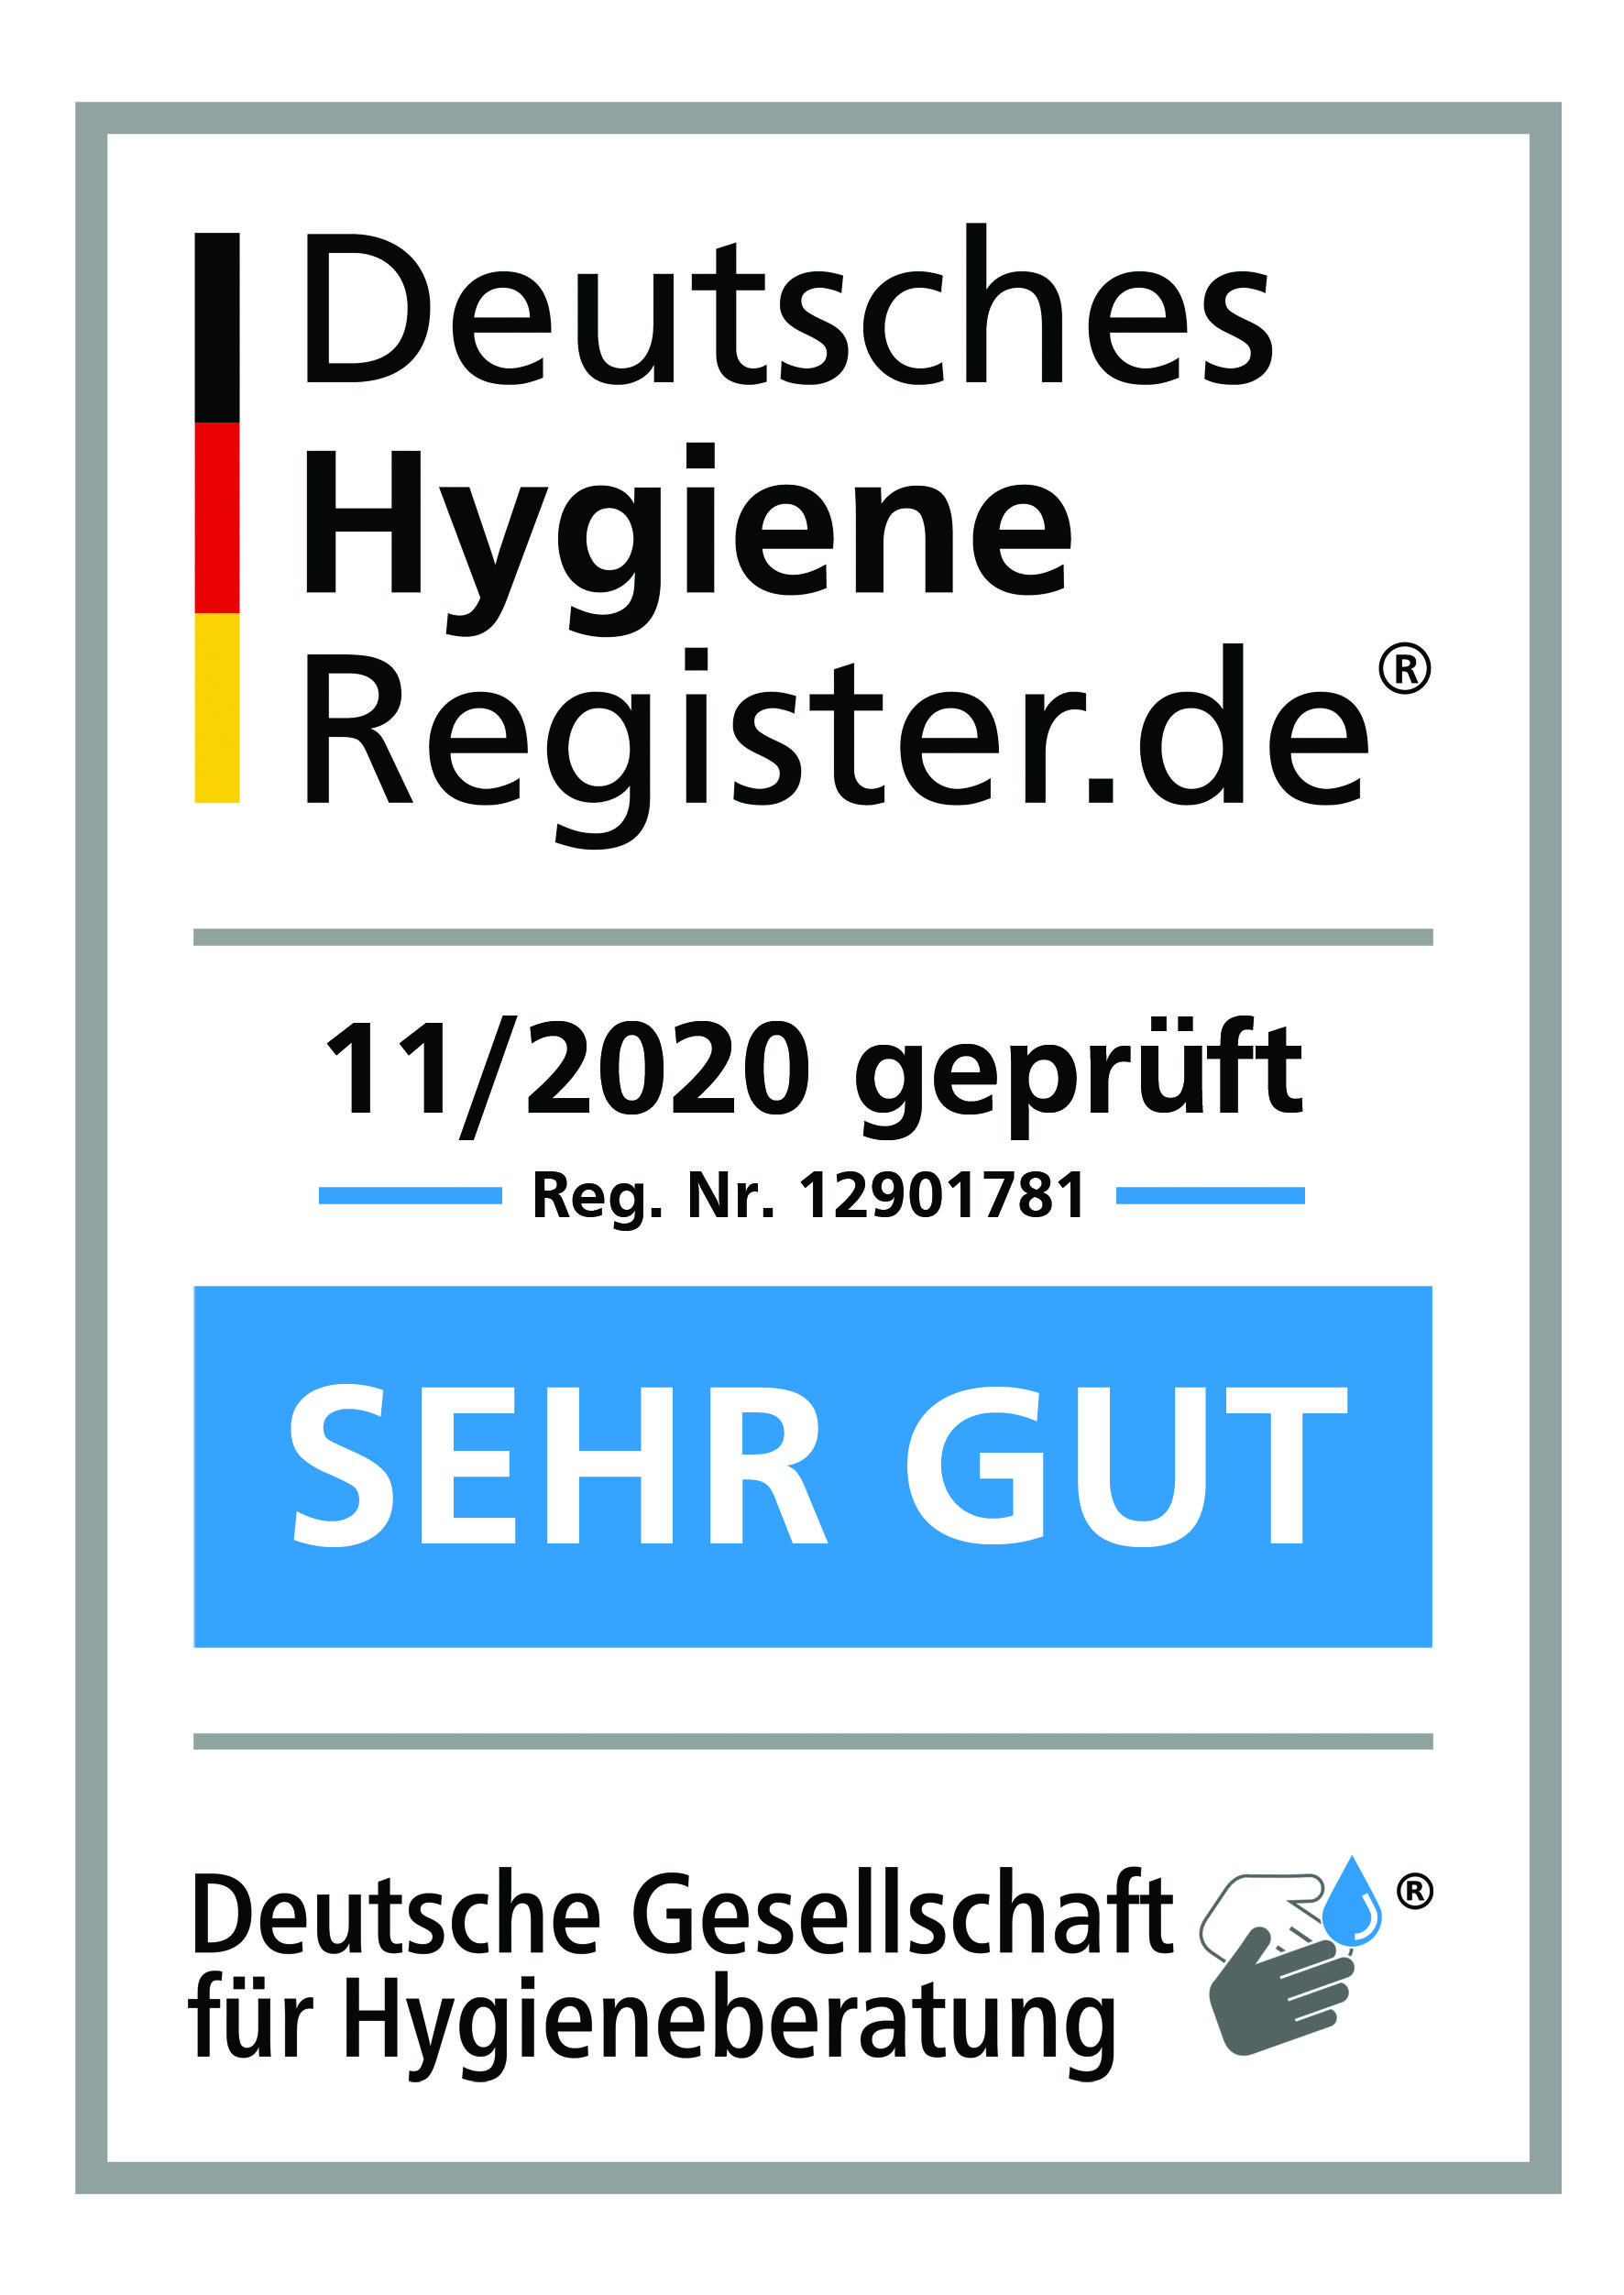 Deutsches Hygiene Register